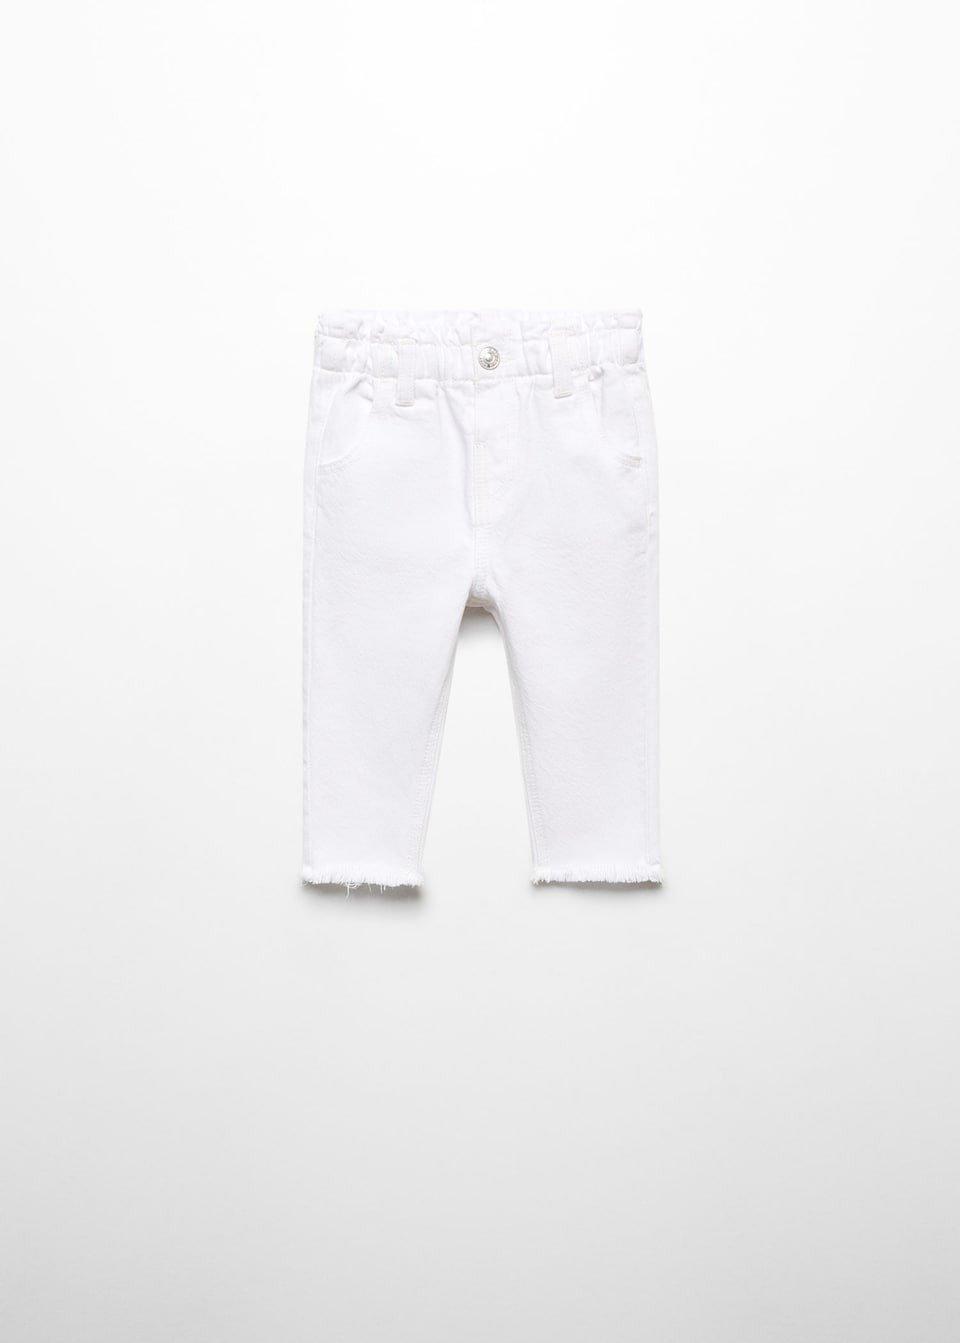 Mango - White Paperbag Jeans, Kids Girls